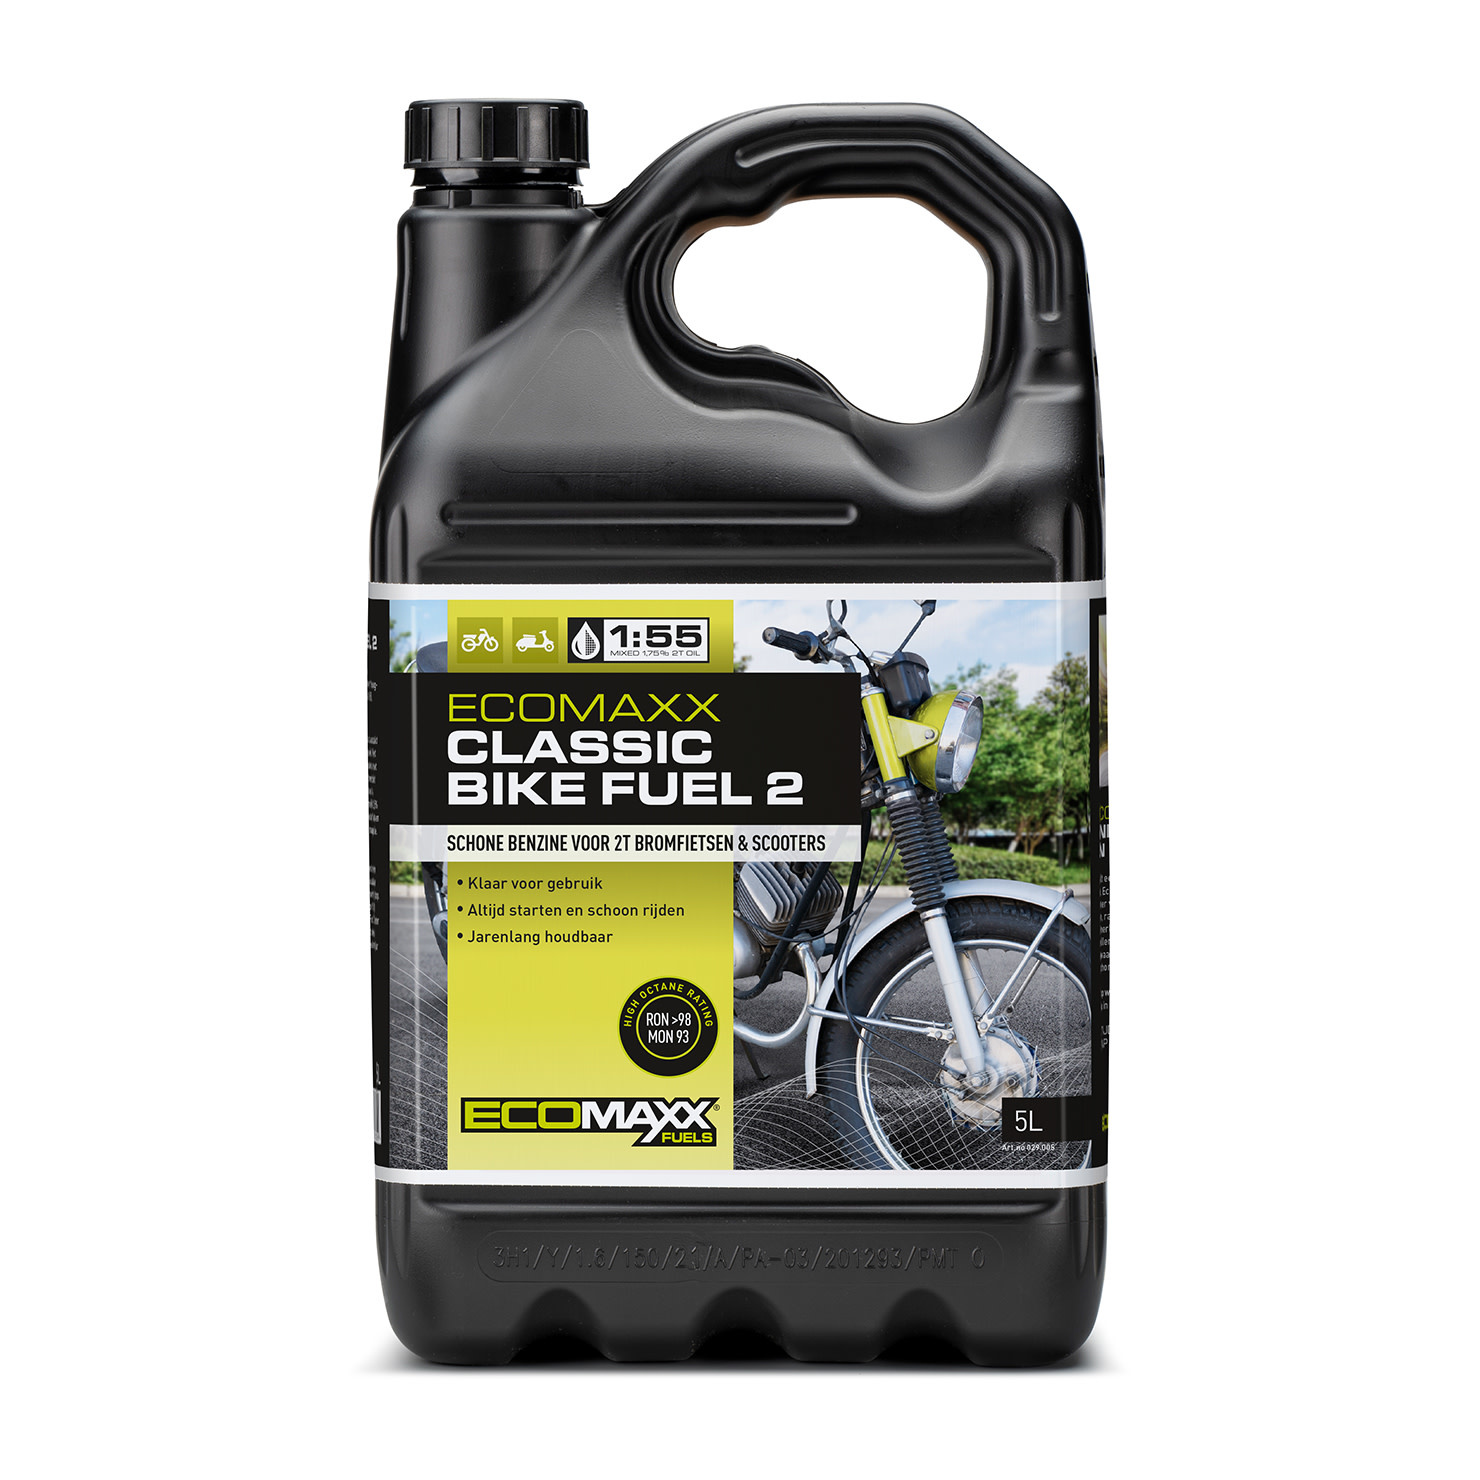 Ecomaxx Ecomaxx Classic Bike Fuel 2 1:55 5 L